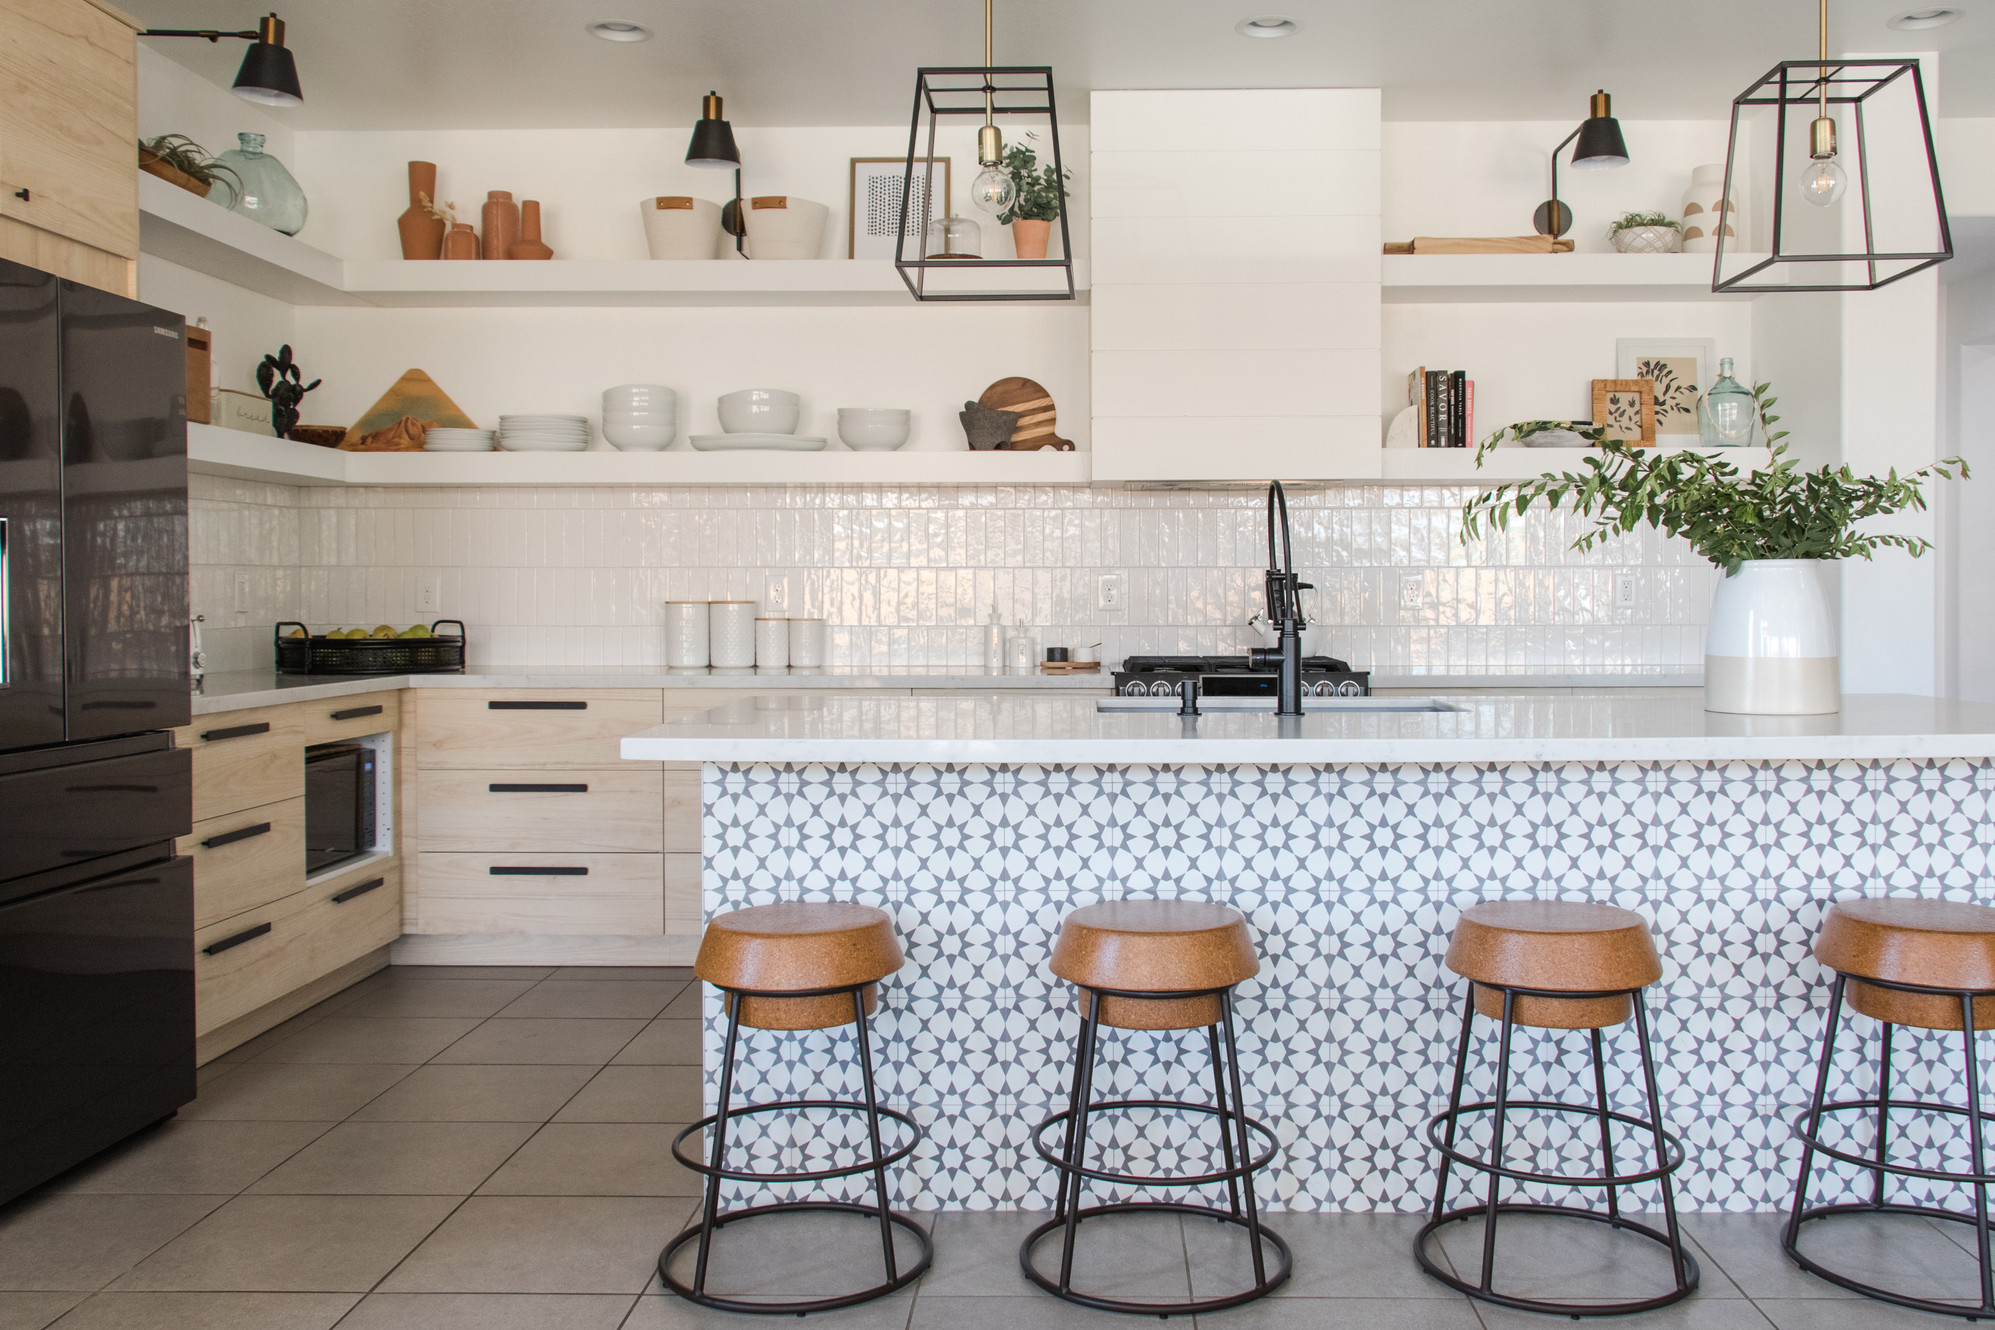 Trang trí nhà bếp bằng giấy dán tường dễ dàng, đơn giản và tiết kiệm rõ ràng so với dùng gạch ốp - Ảnh 2.